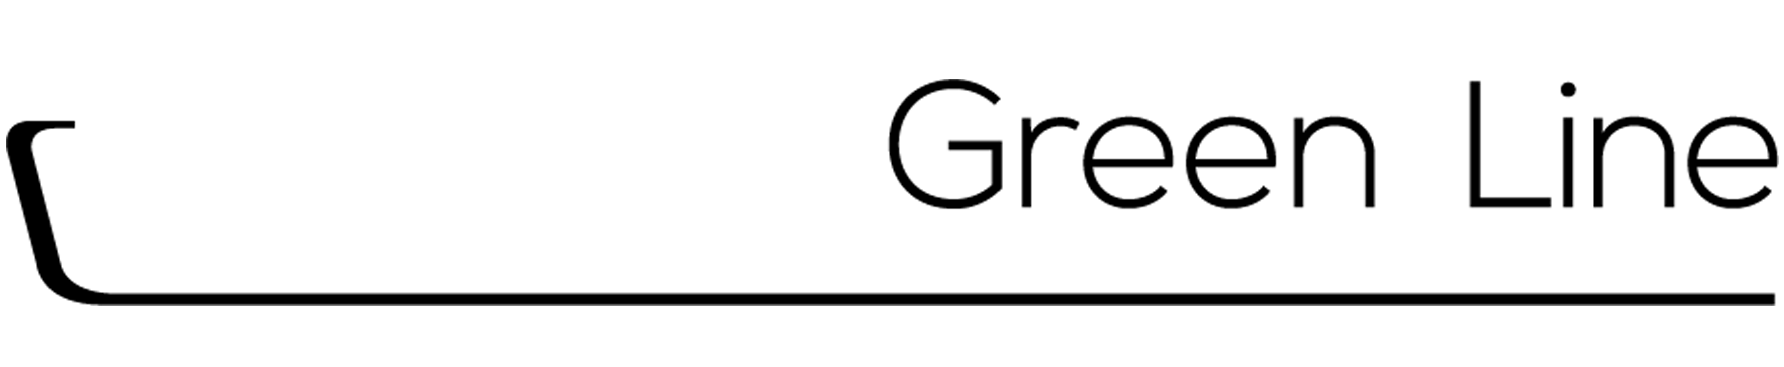 Dosatron Green Line logo